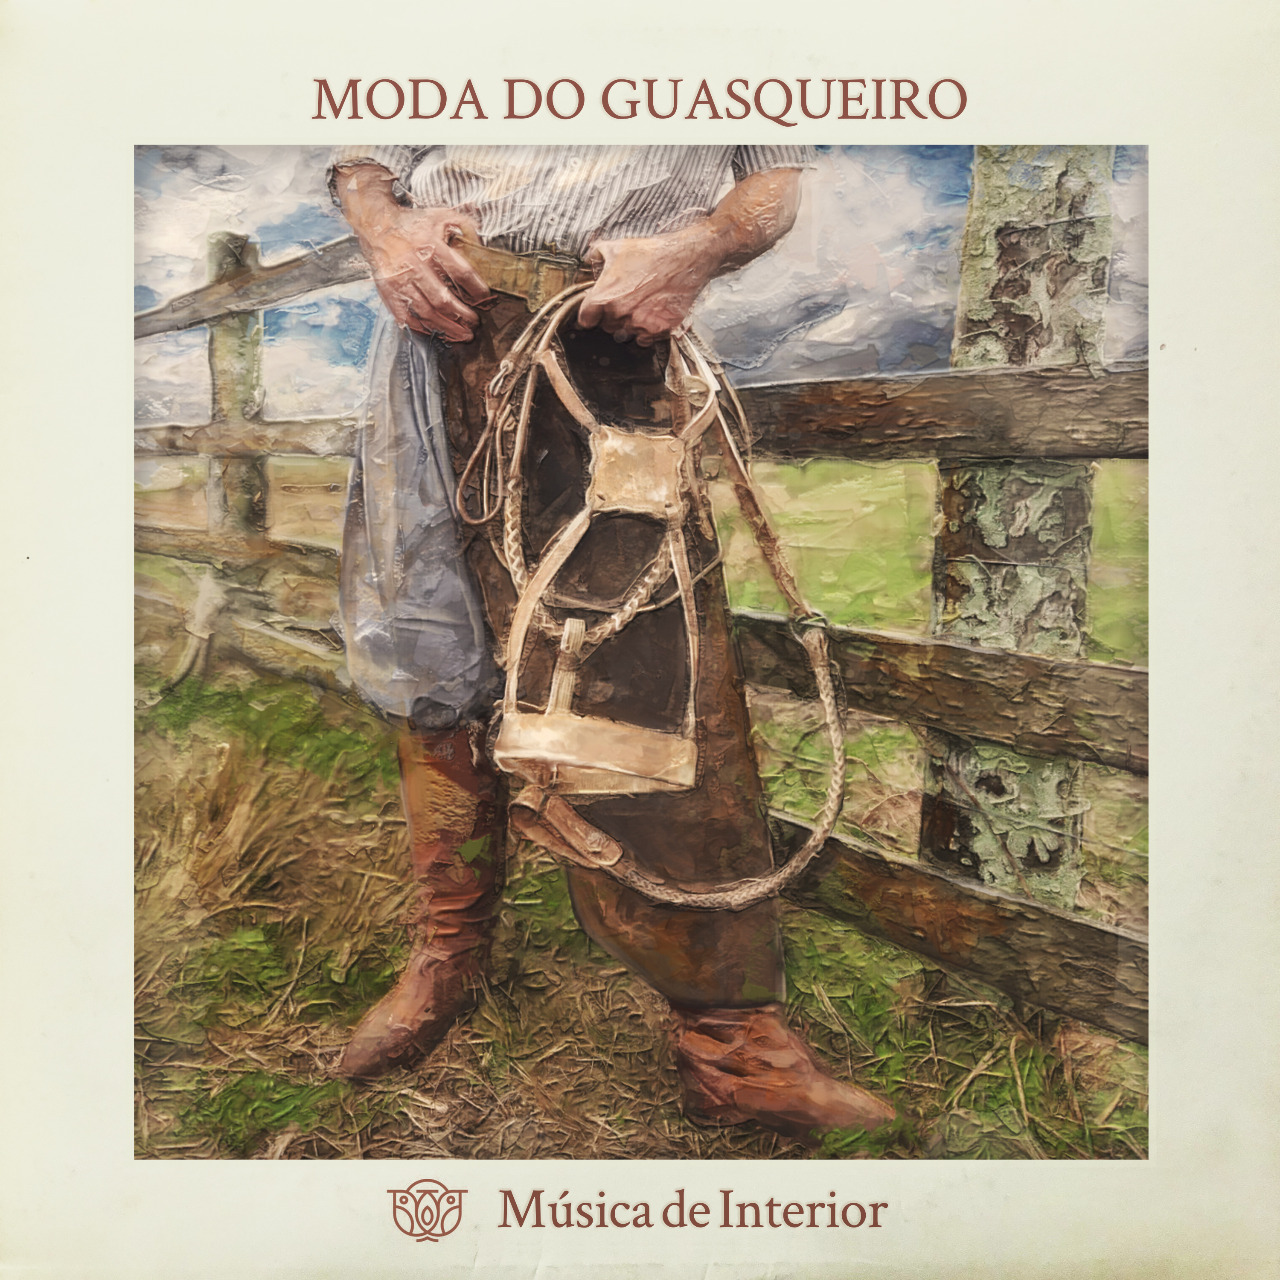 Musica _de _interior_Single_Moda_dos_Guasqueiro_by_Paulo_Coruja_CAPA